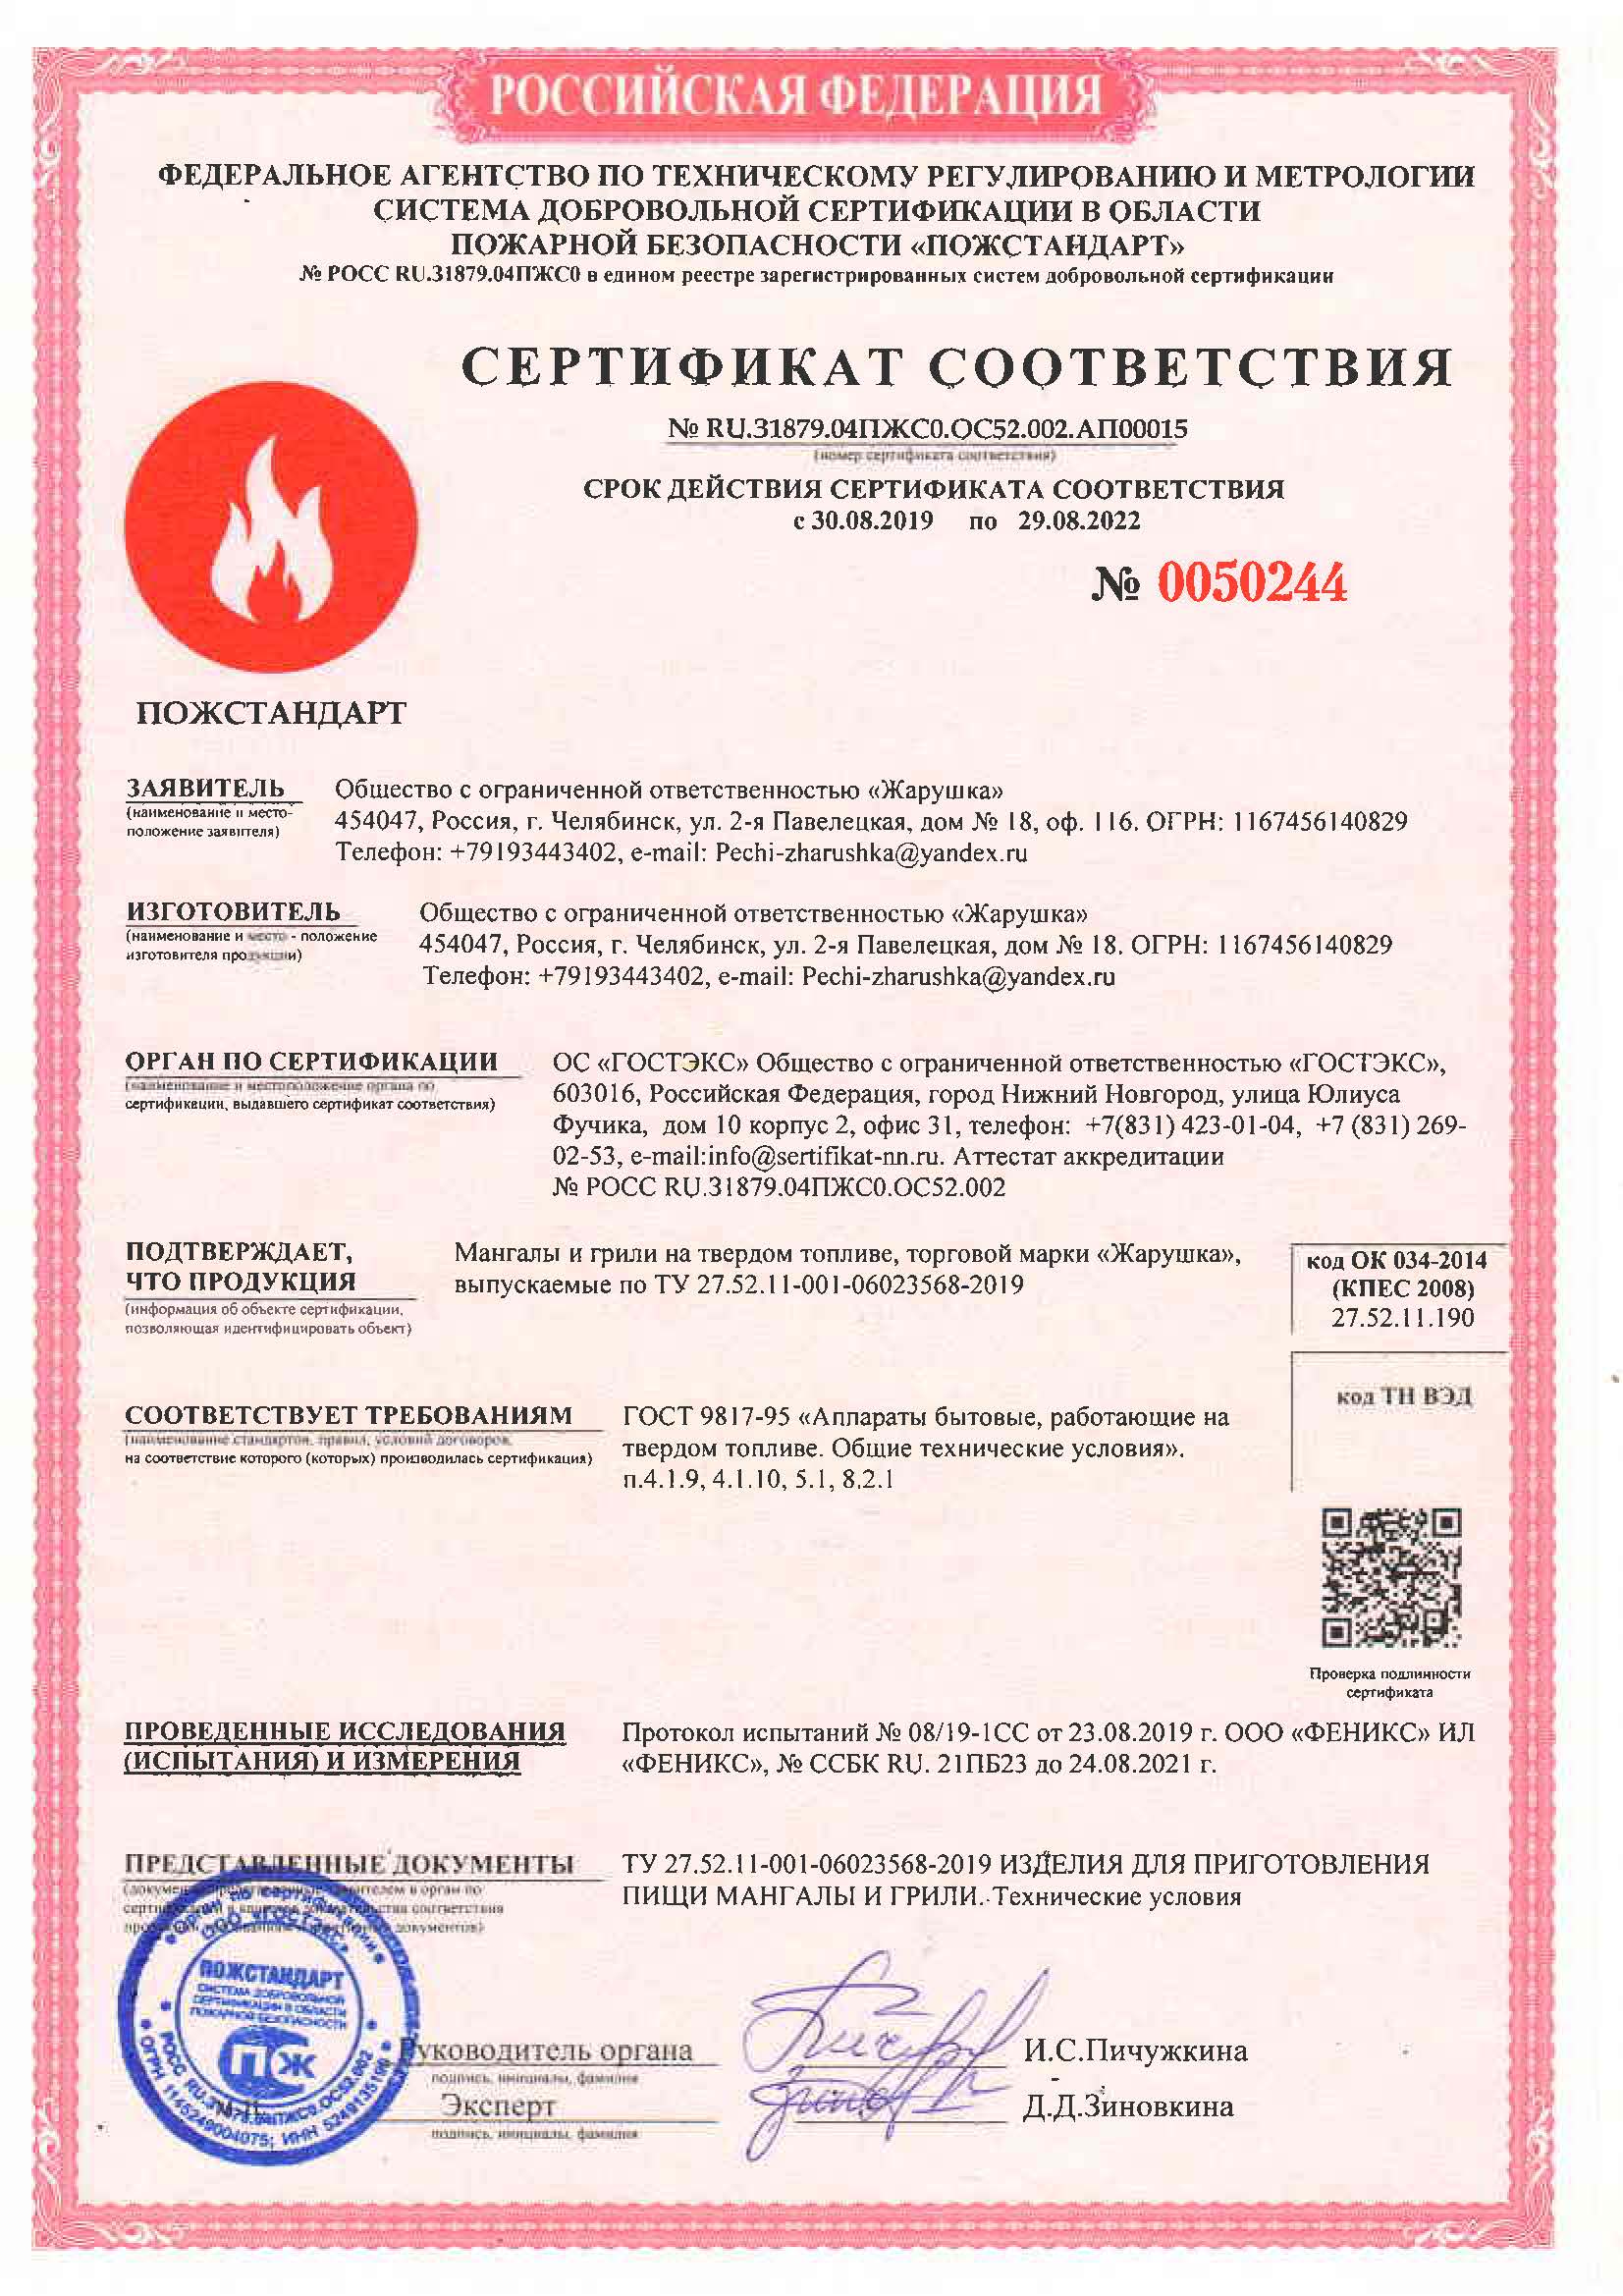 НКУ сертификат соответствия